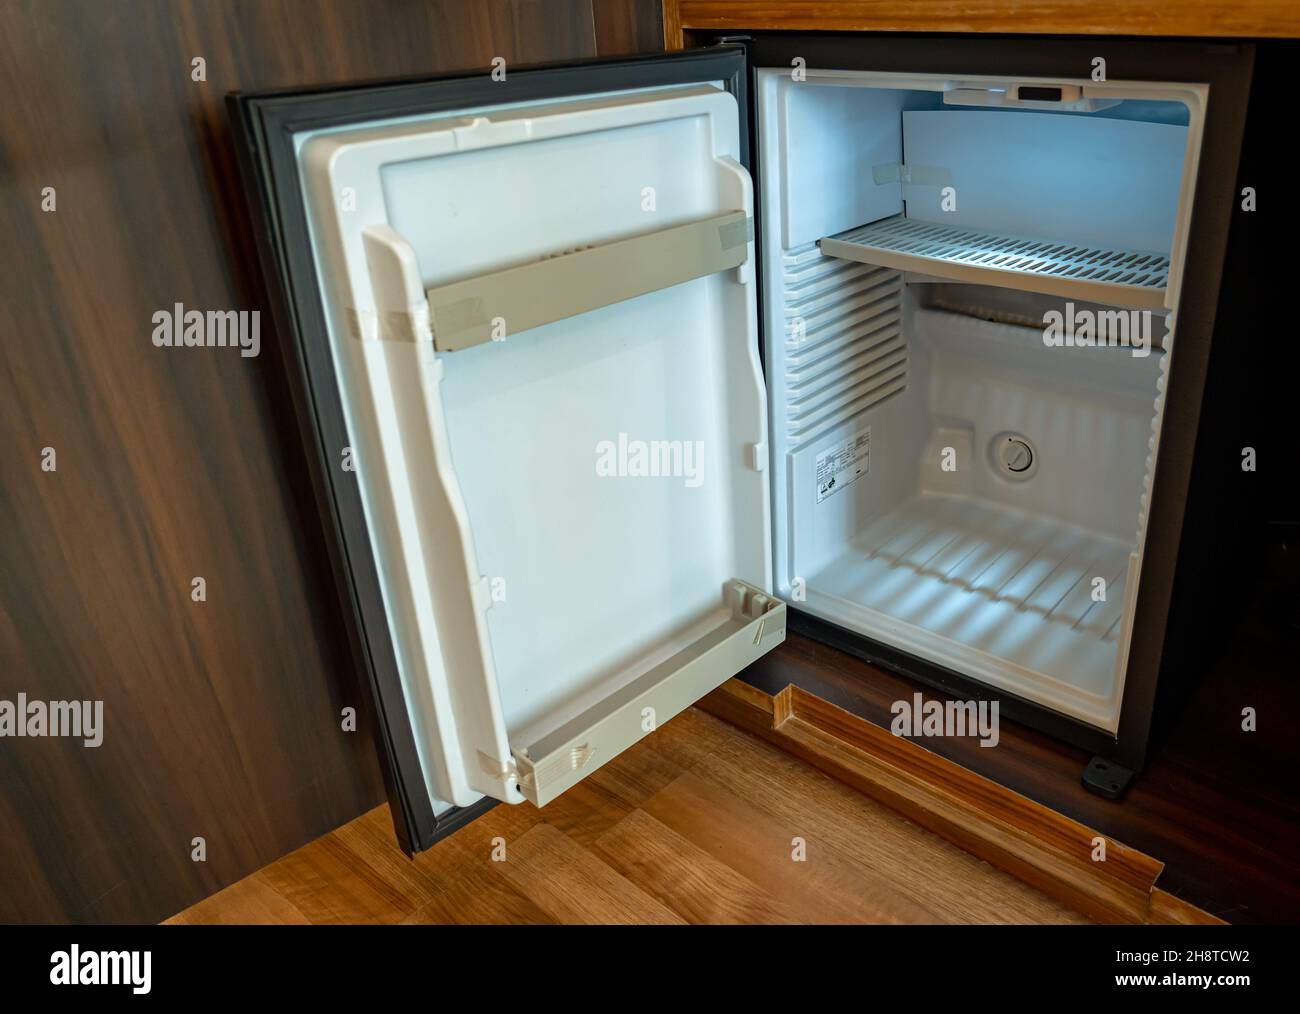 Un petit réfrigérateur vide avec sa porte ouverte Photo Stock - Alamy